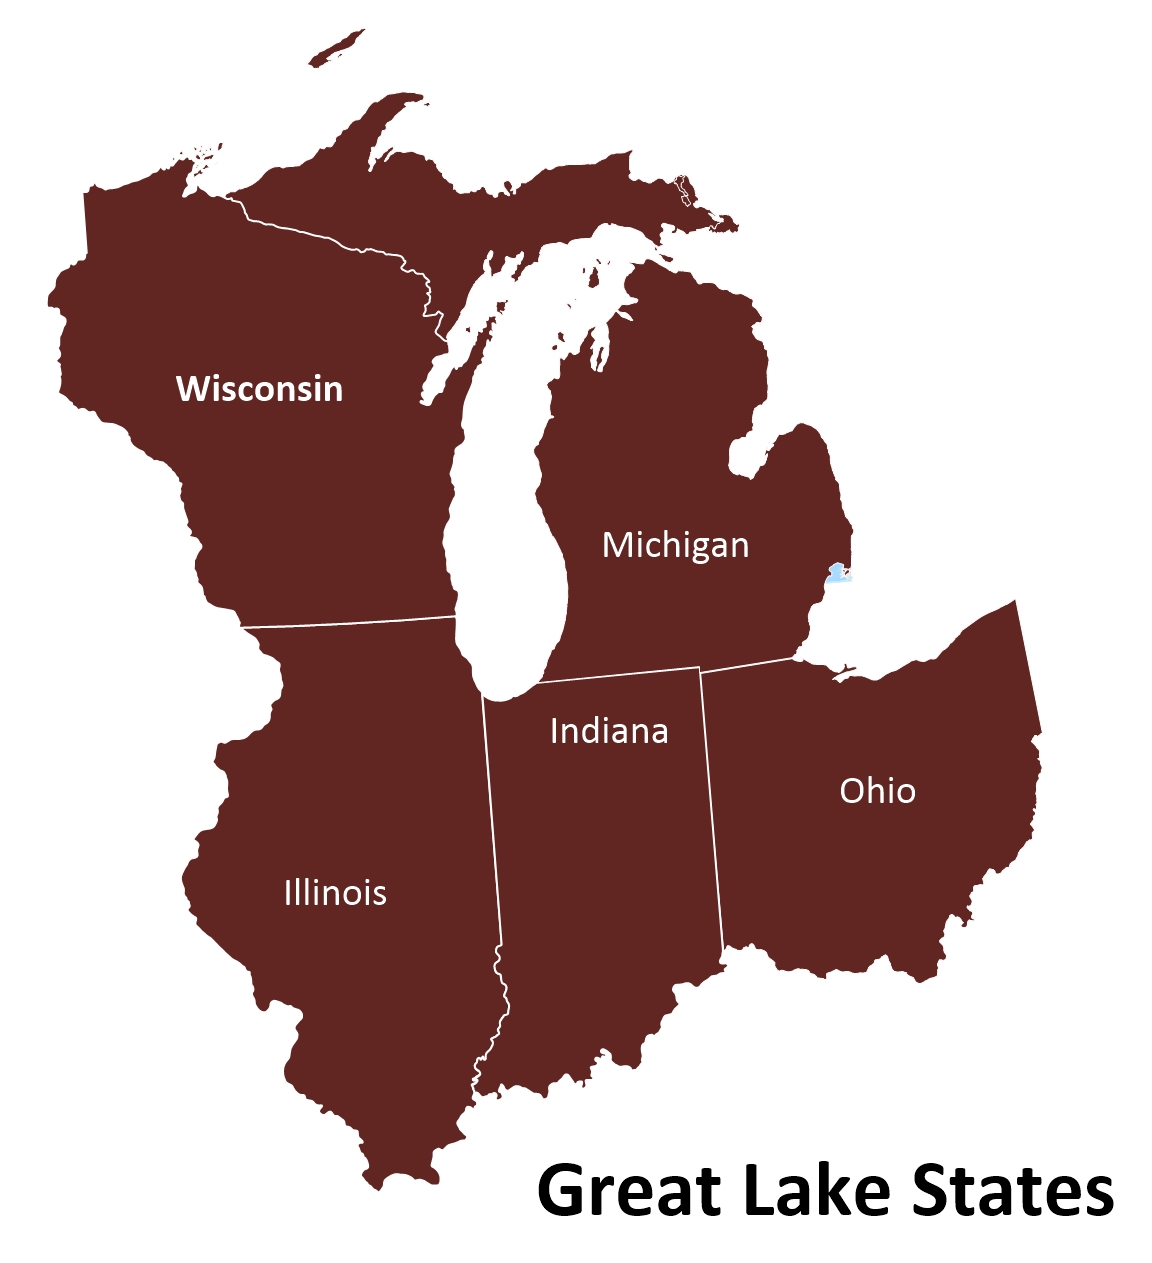 Great Lake States